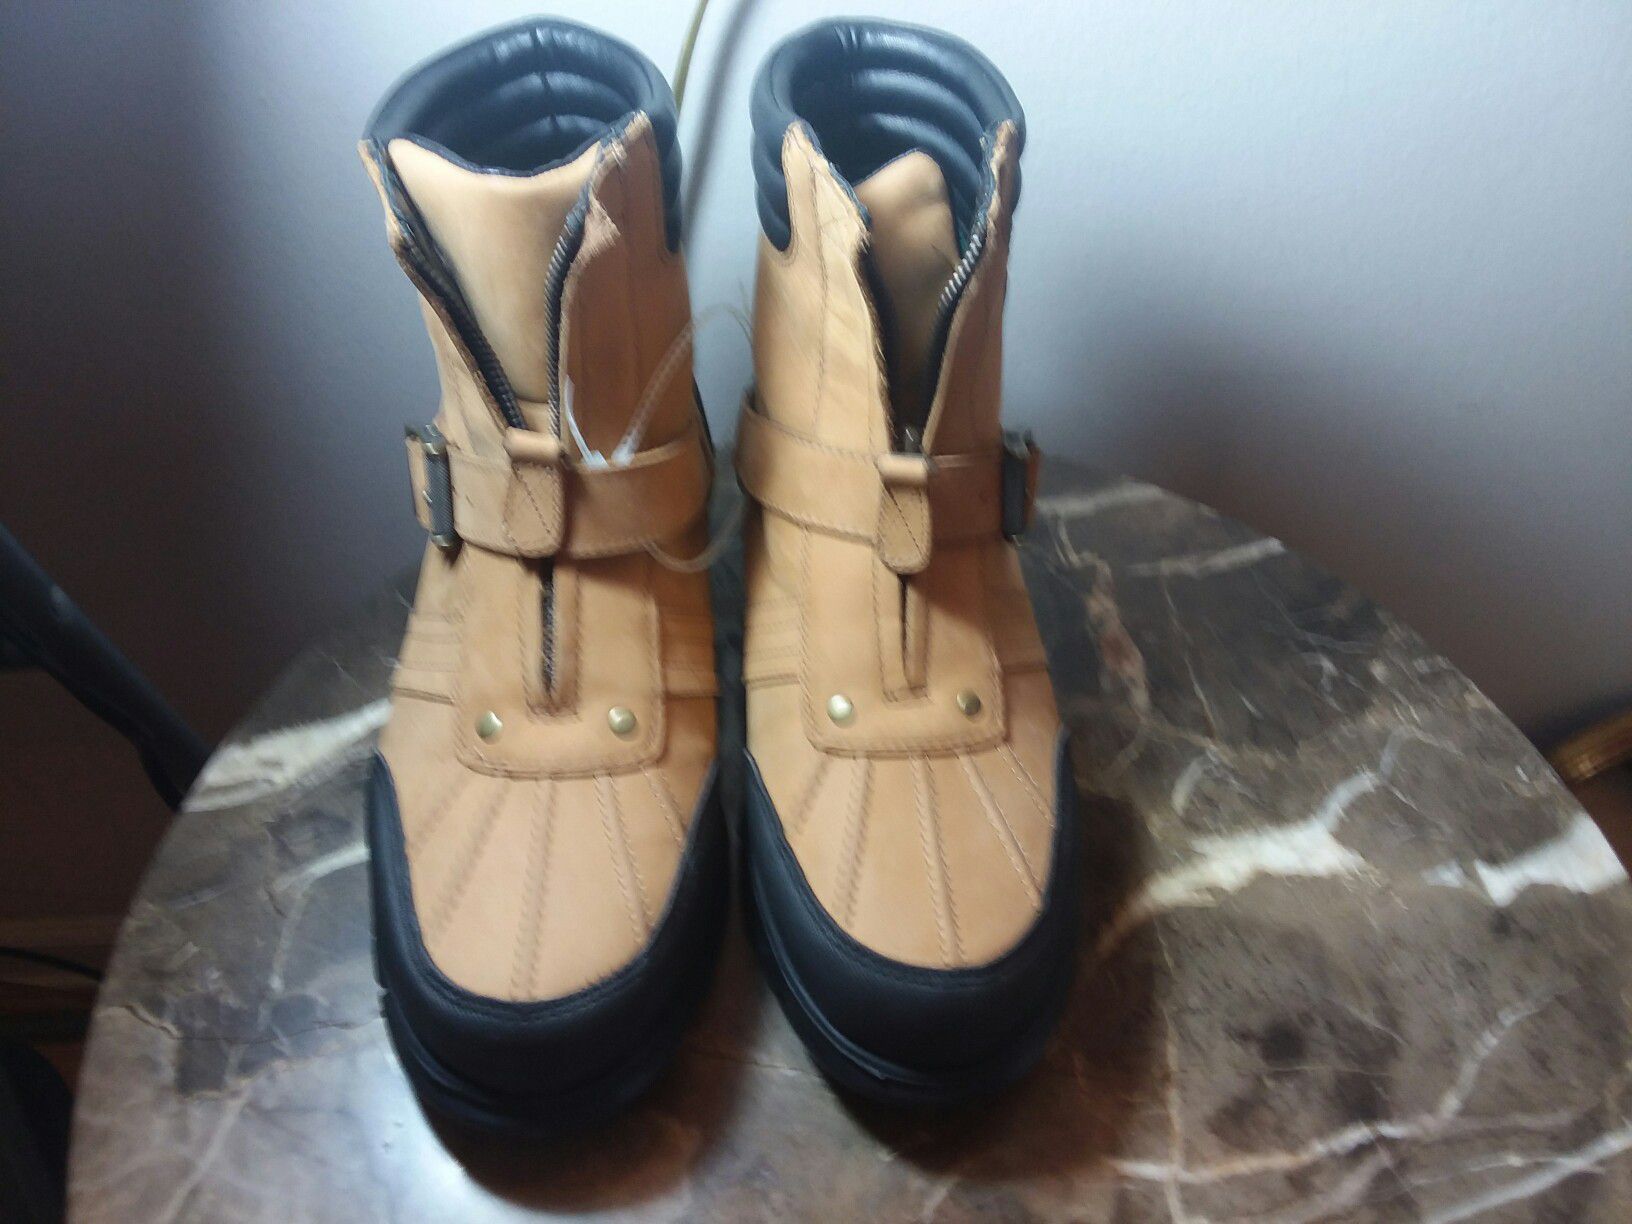 Ralph Lauren men's high waterproof new boots sz 10